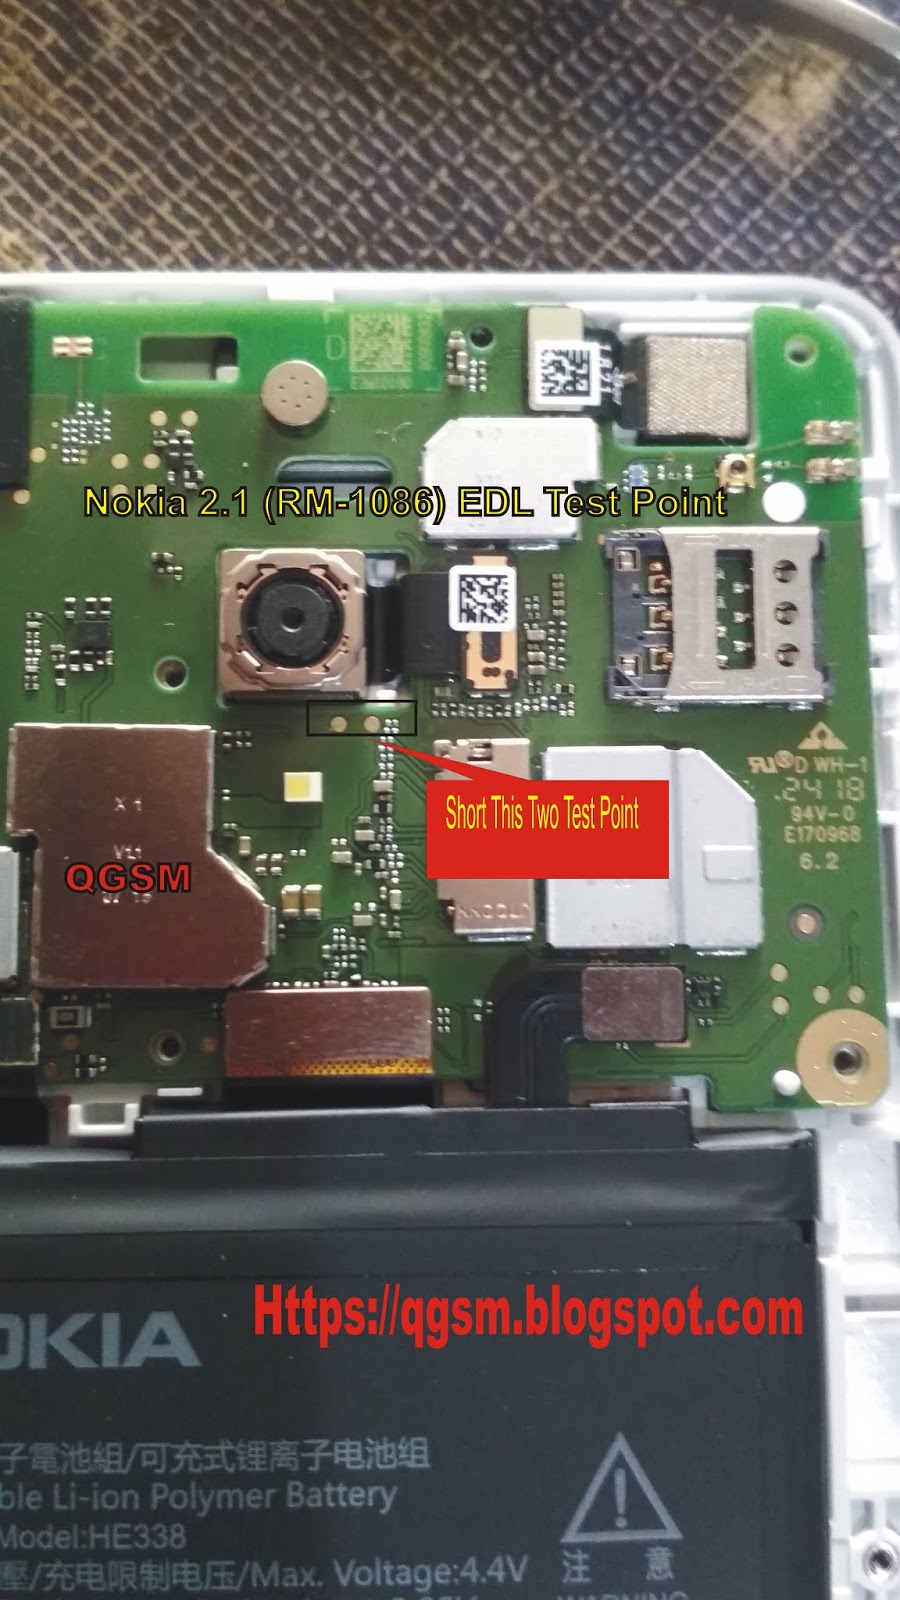 الاتصال تغطية لكمة Asus Zenfone Max Z010d Dead Boot Repair Translucent Network Org